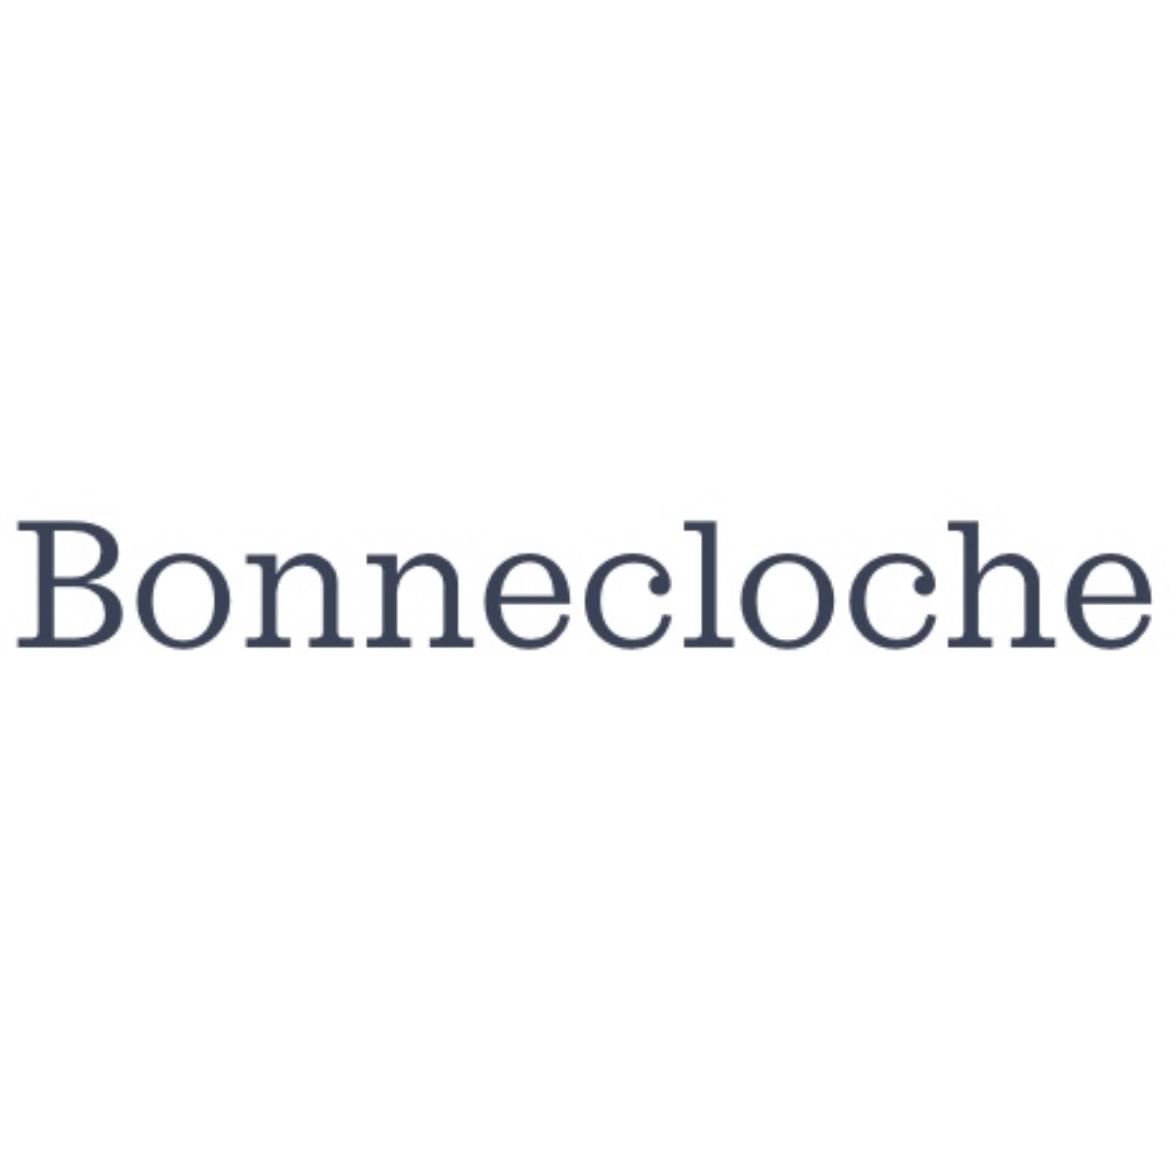 Bonnecloche's images